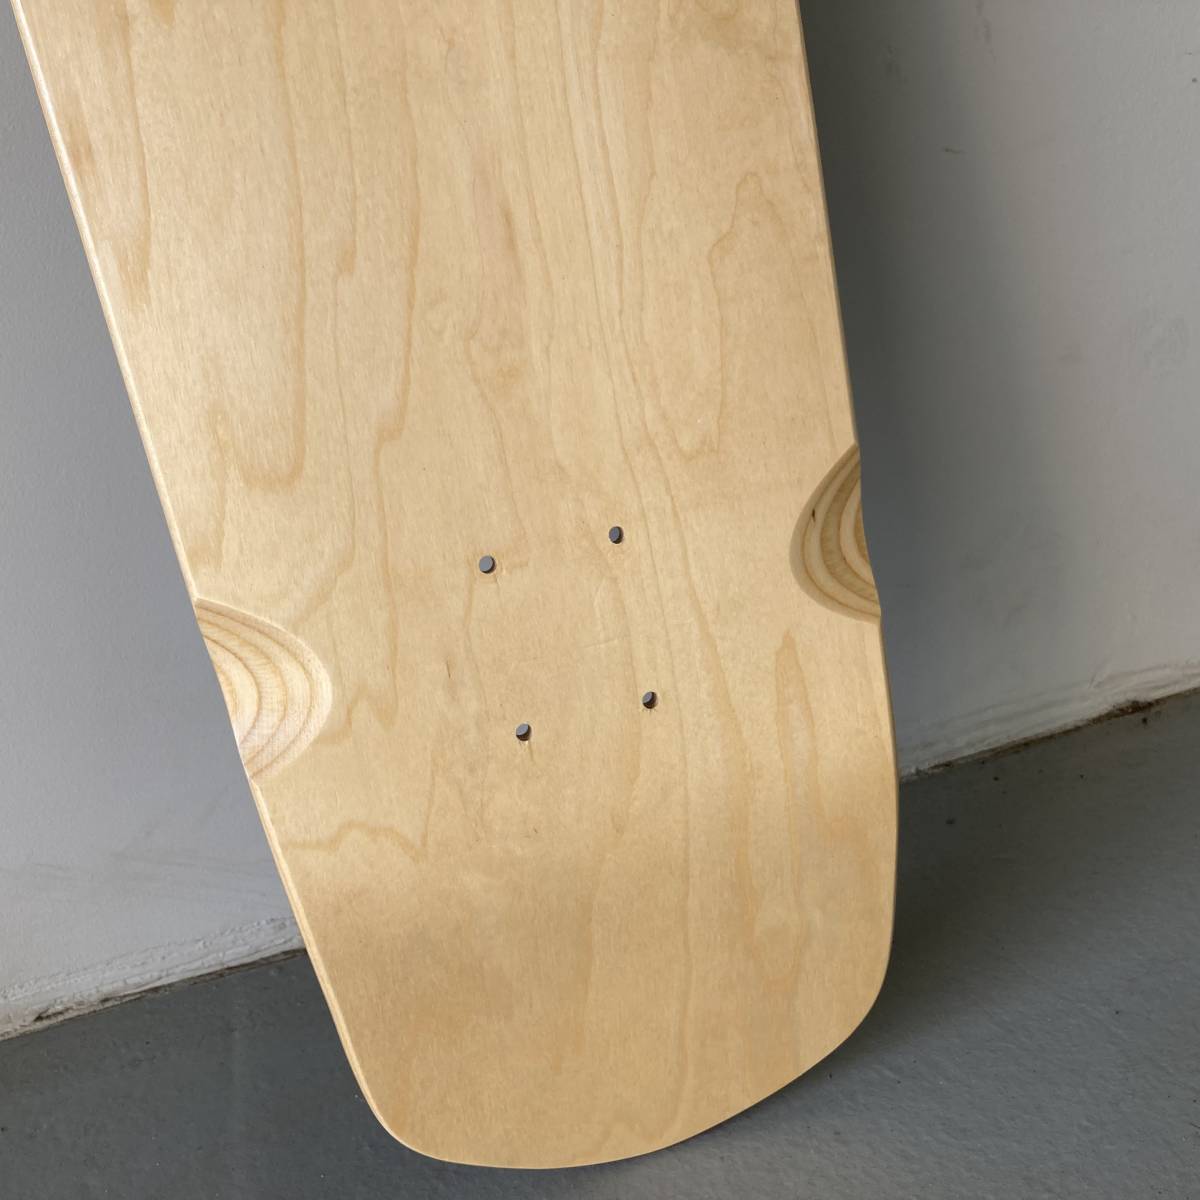 32インチ 81cm セミロング クルーザー サーフスケートボード デッキ 